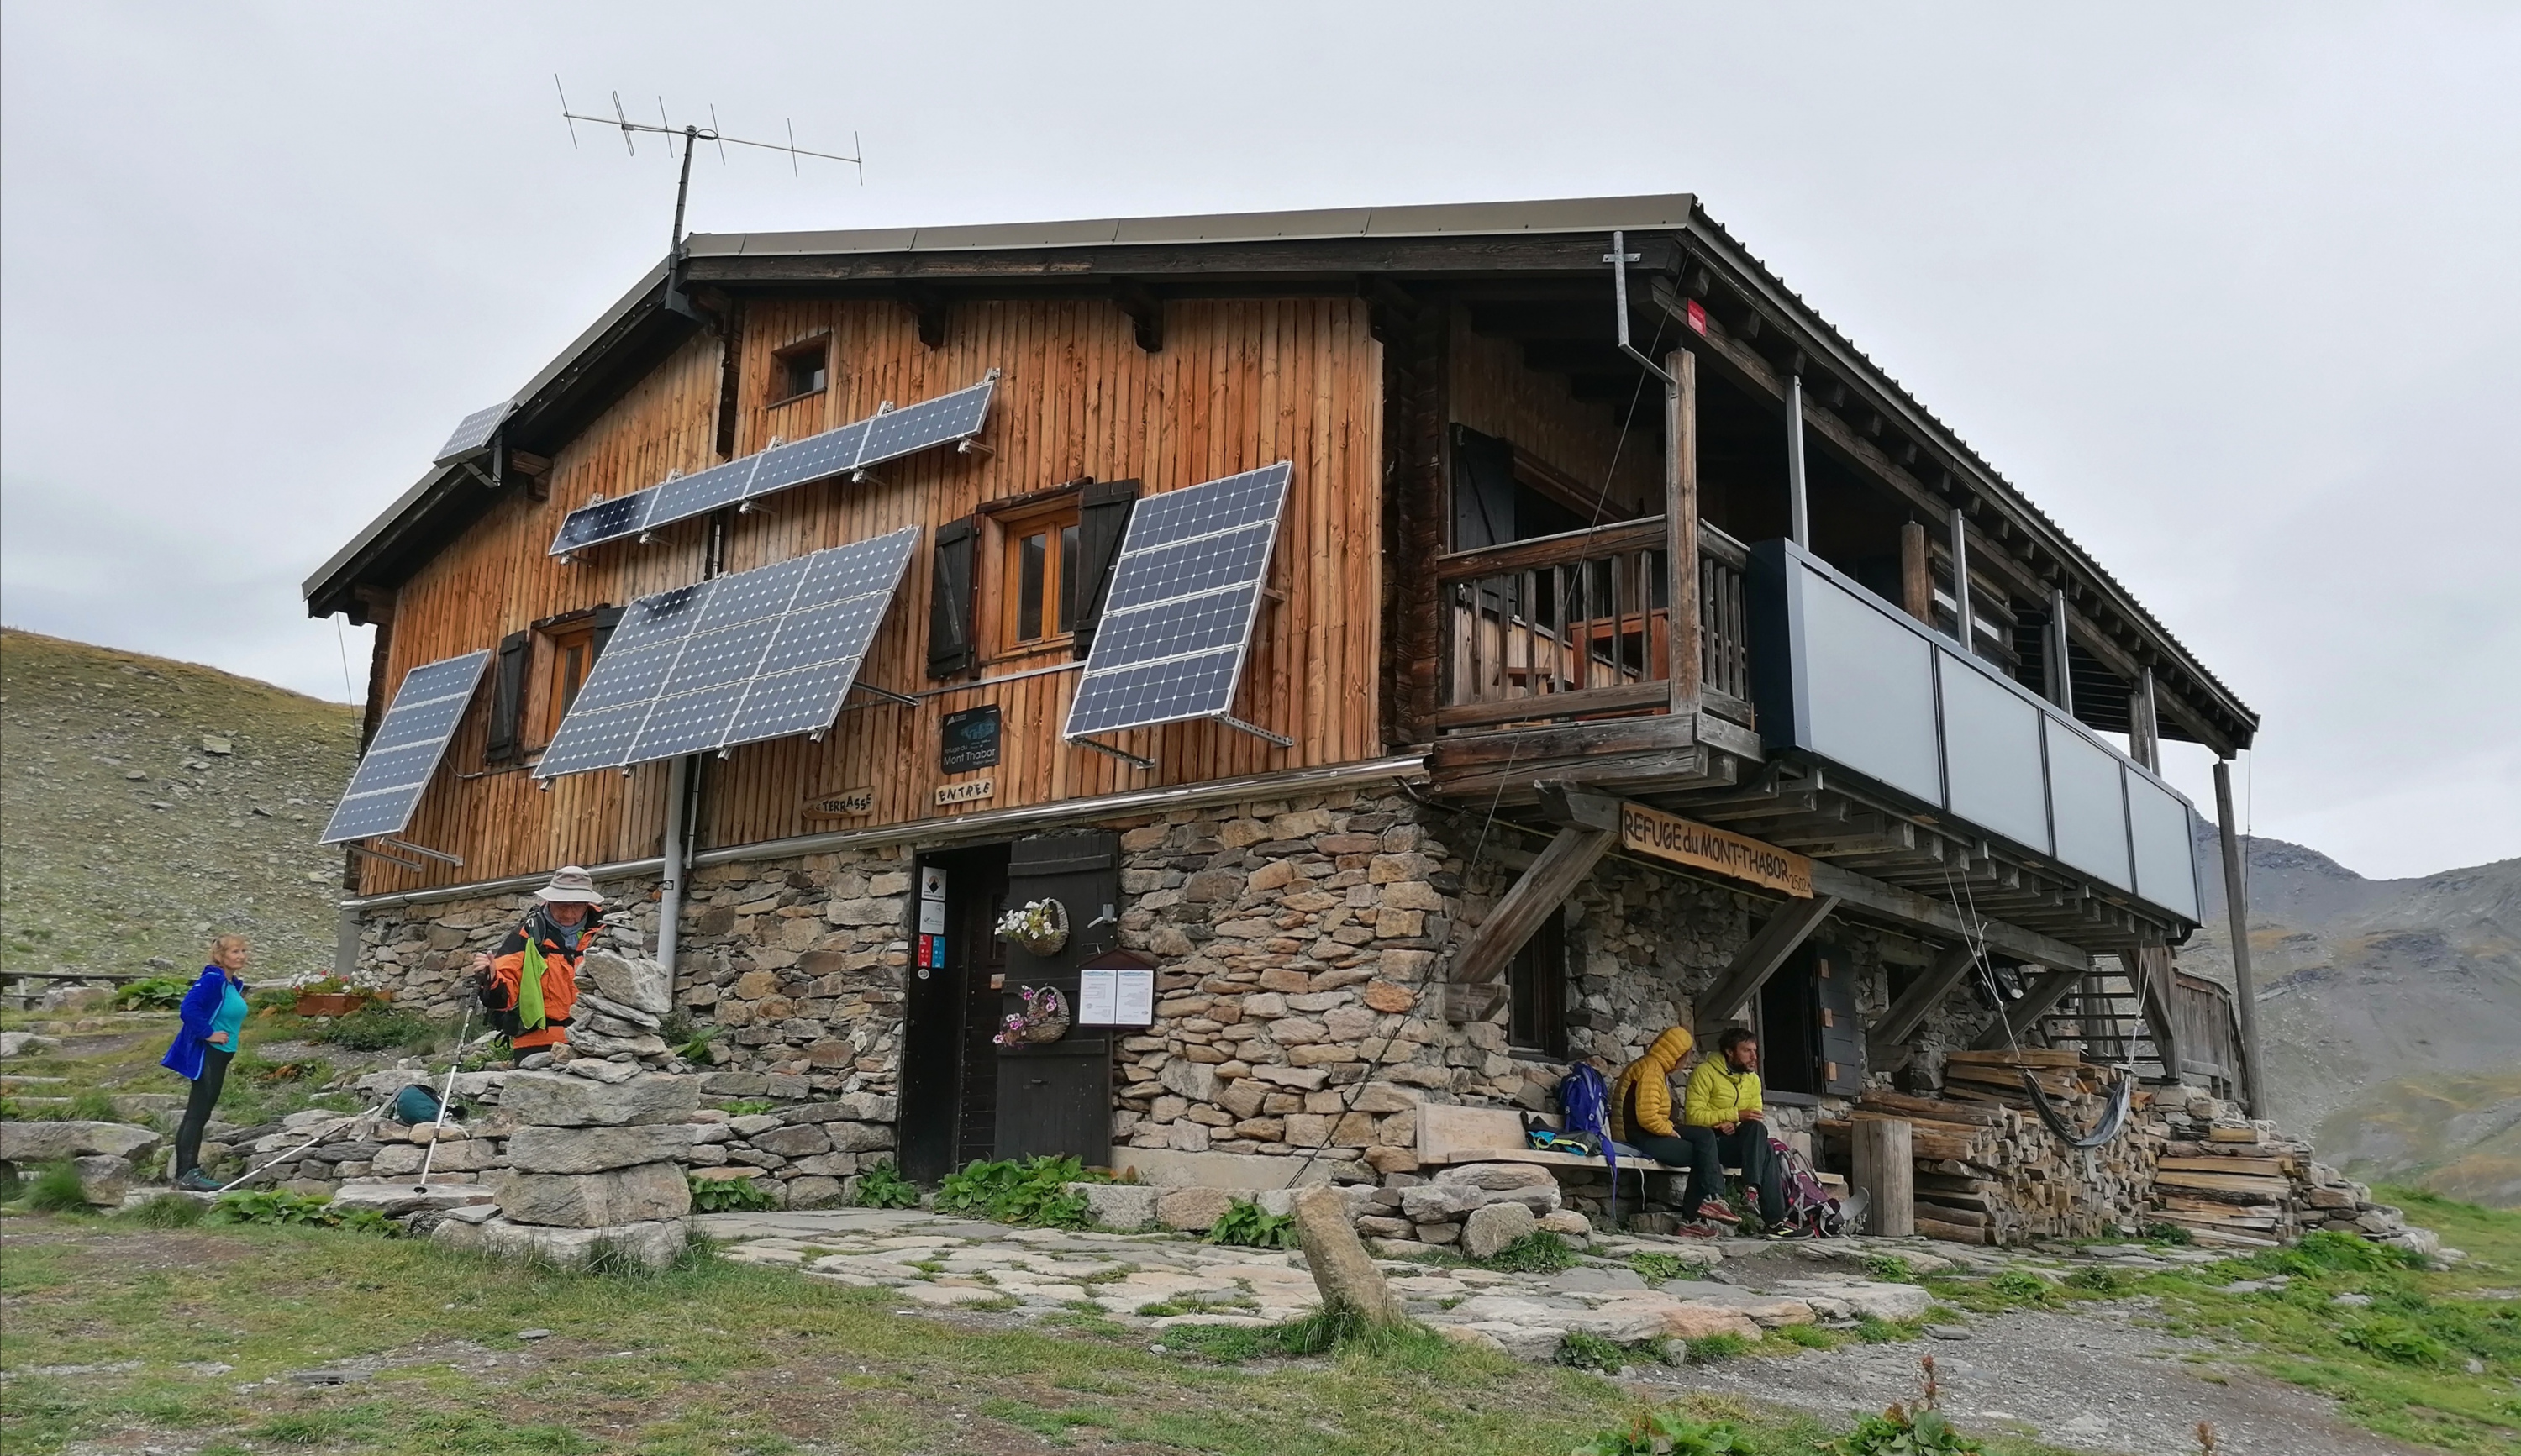 Los refugios de montaña, laboratorios de energias renovables